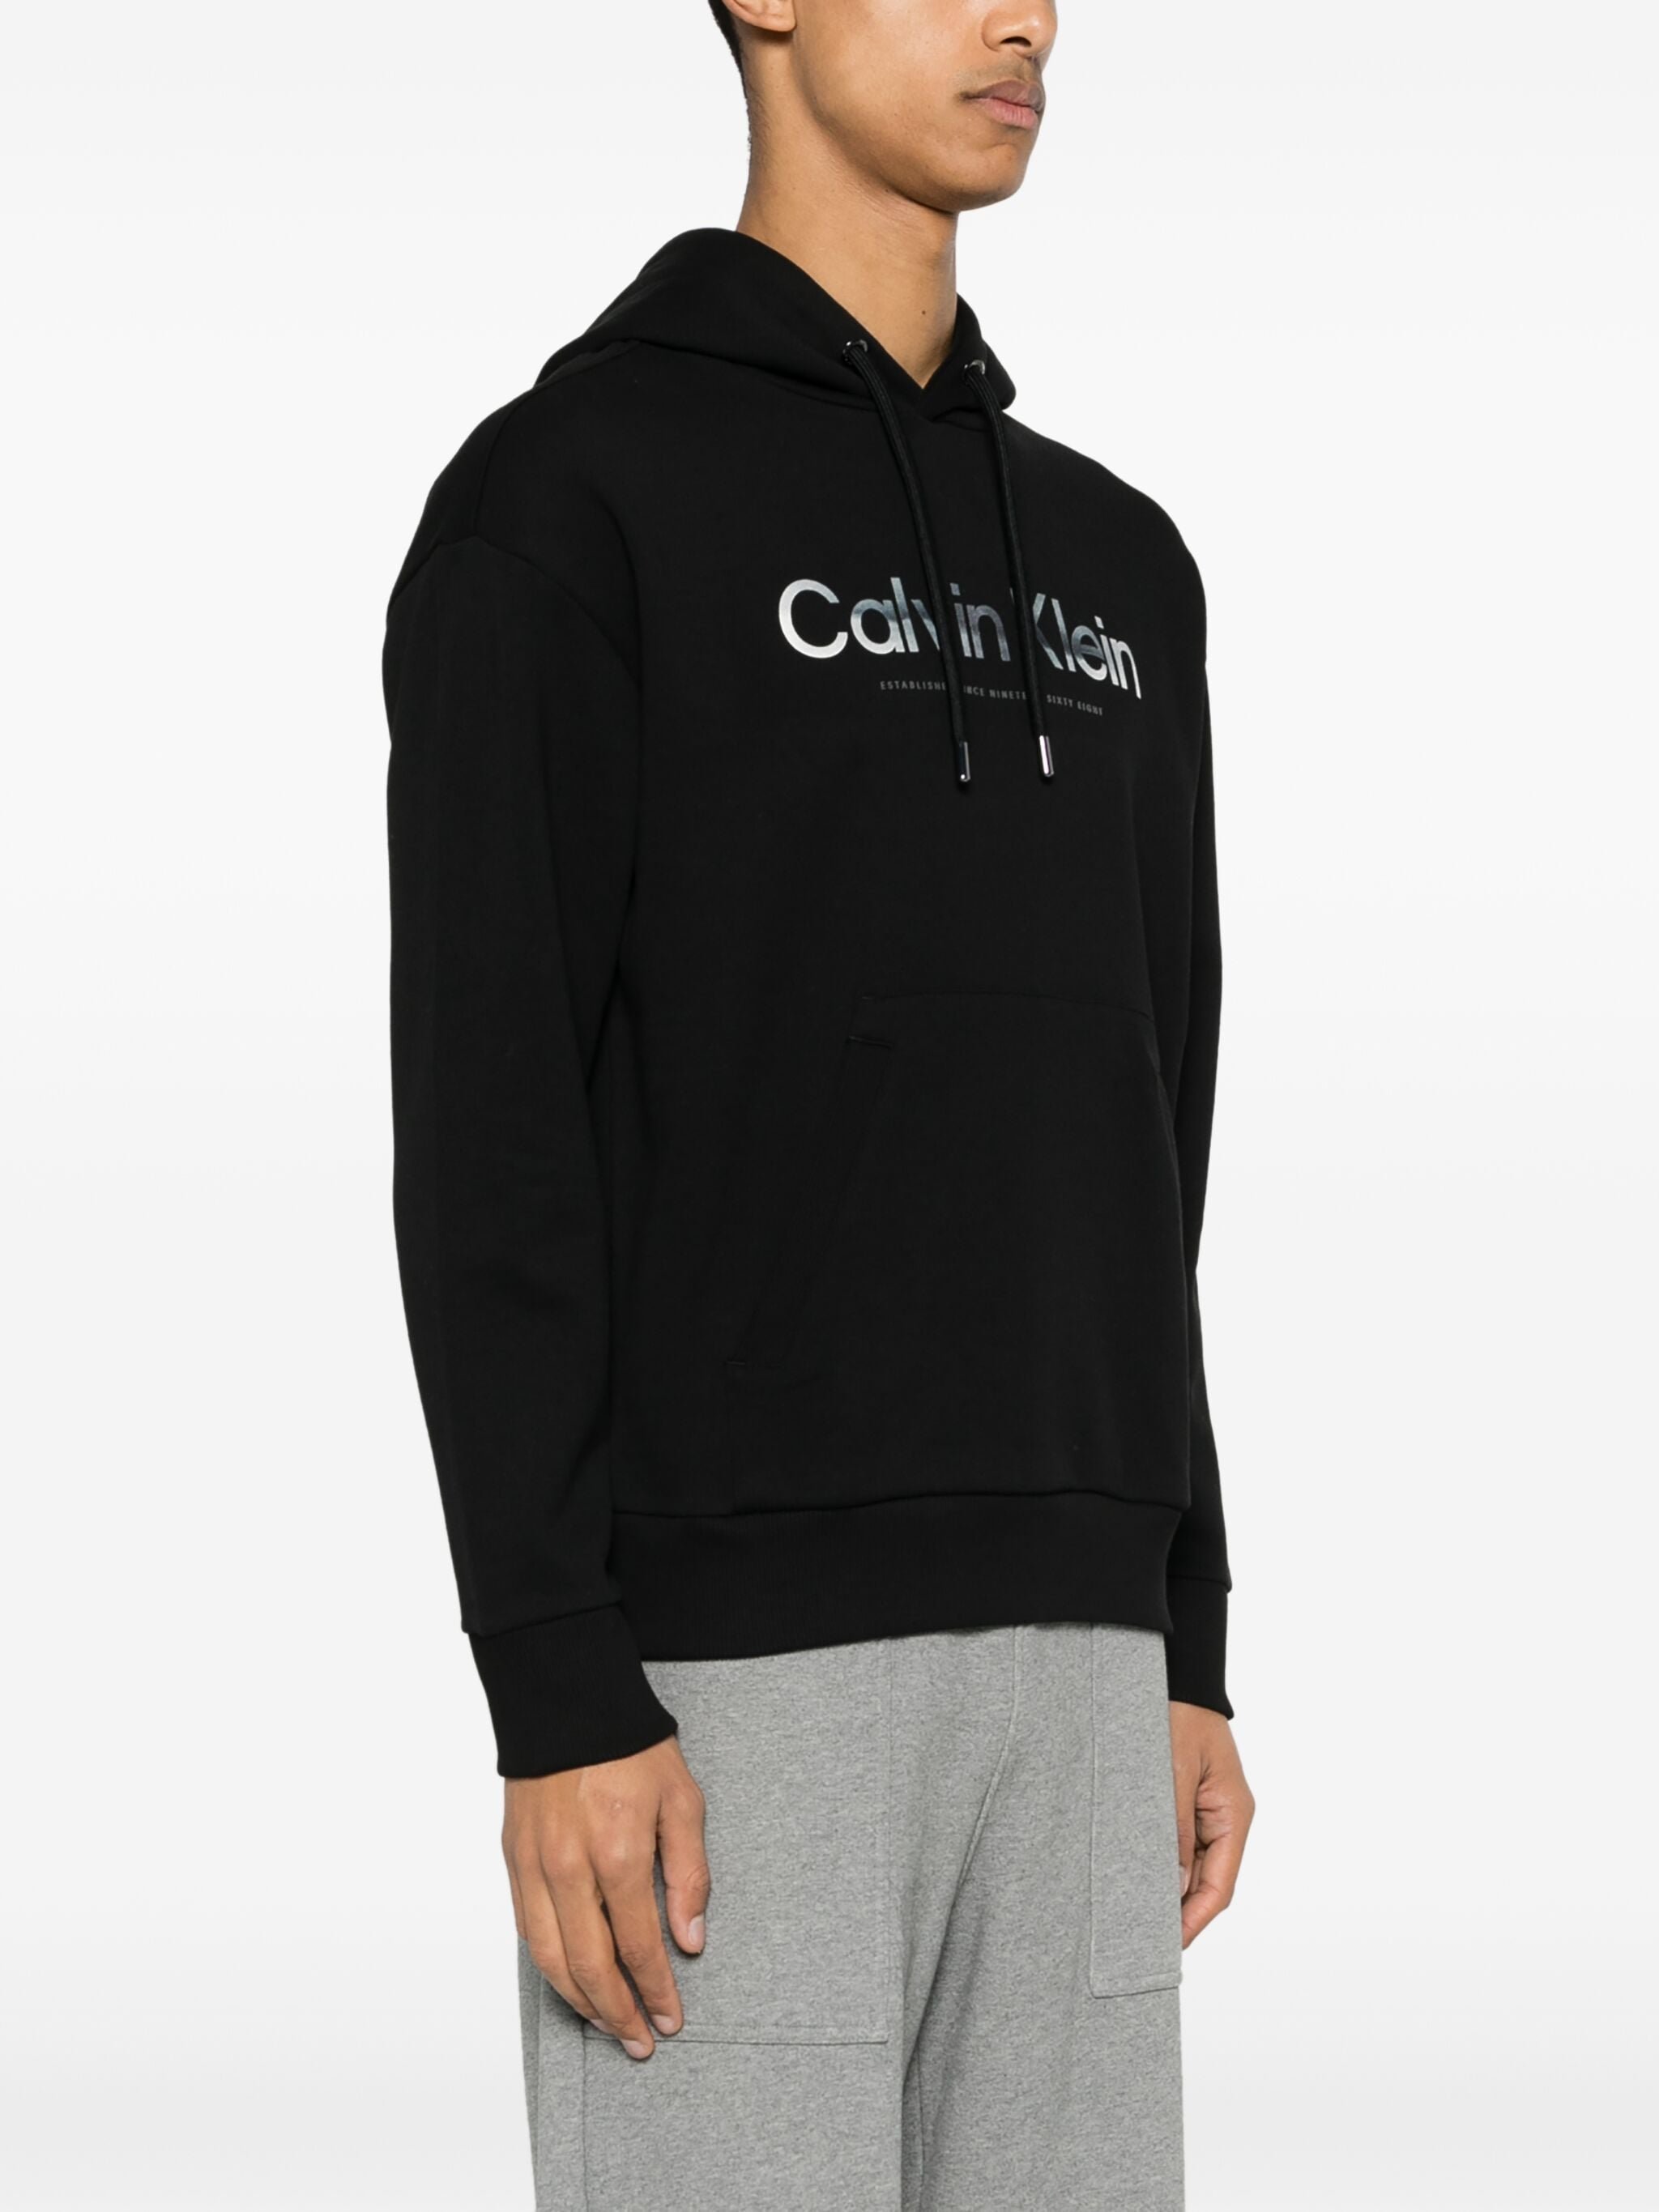 Sweatshirts  Calvin klein K10K112952 BEH Ck Black